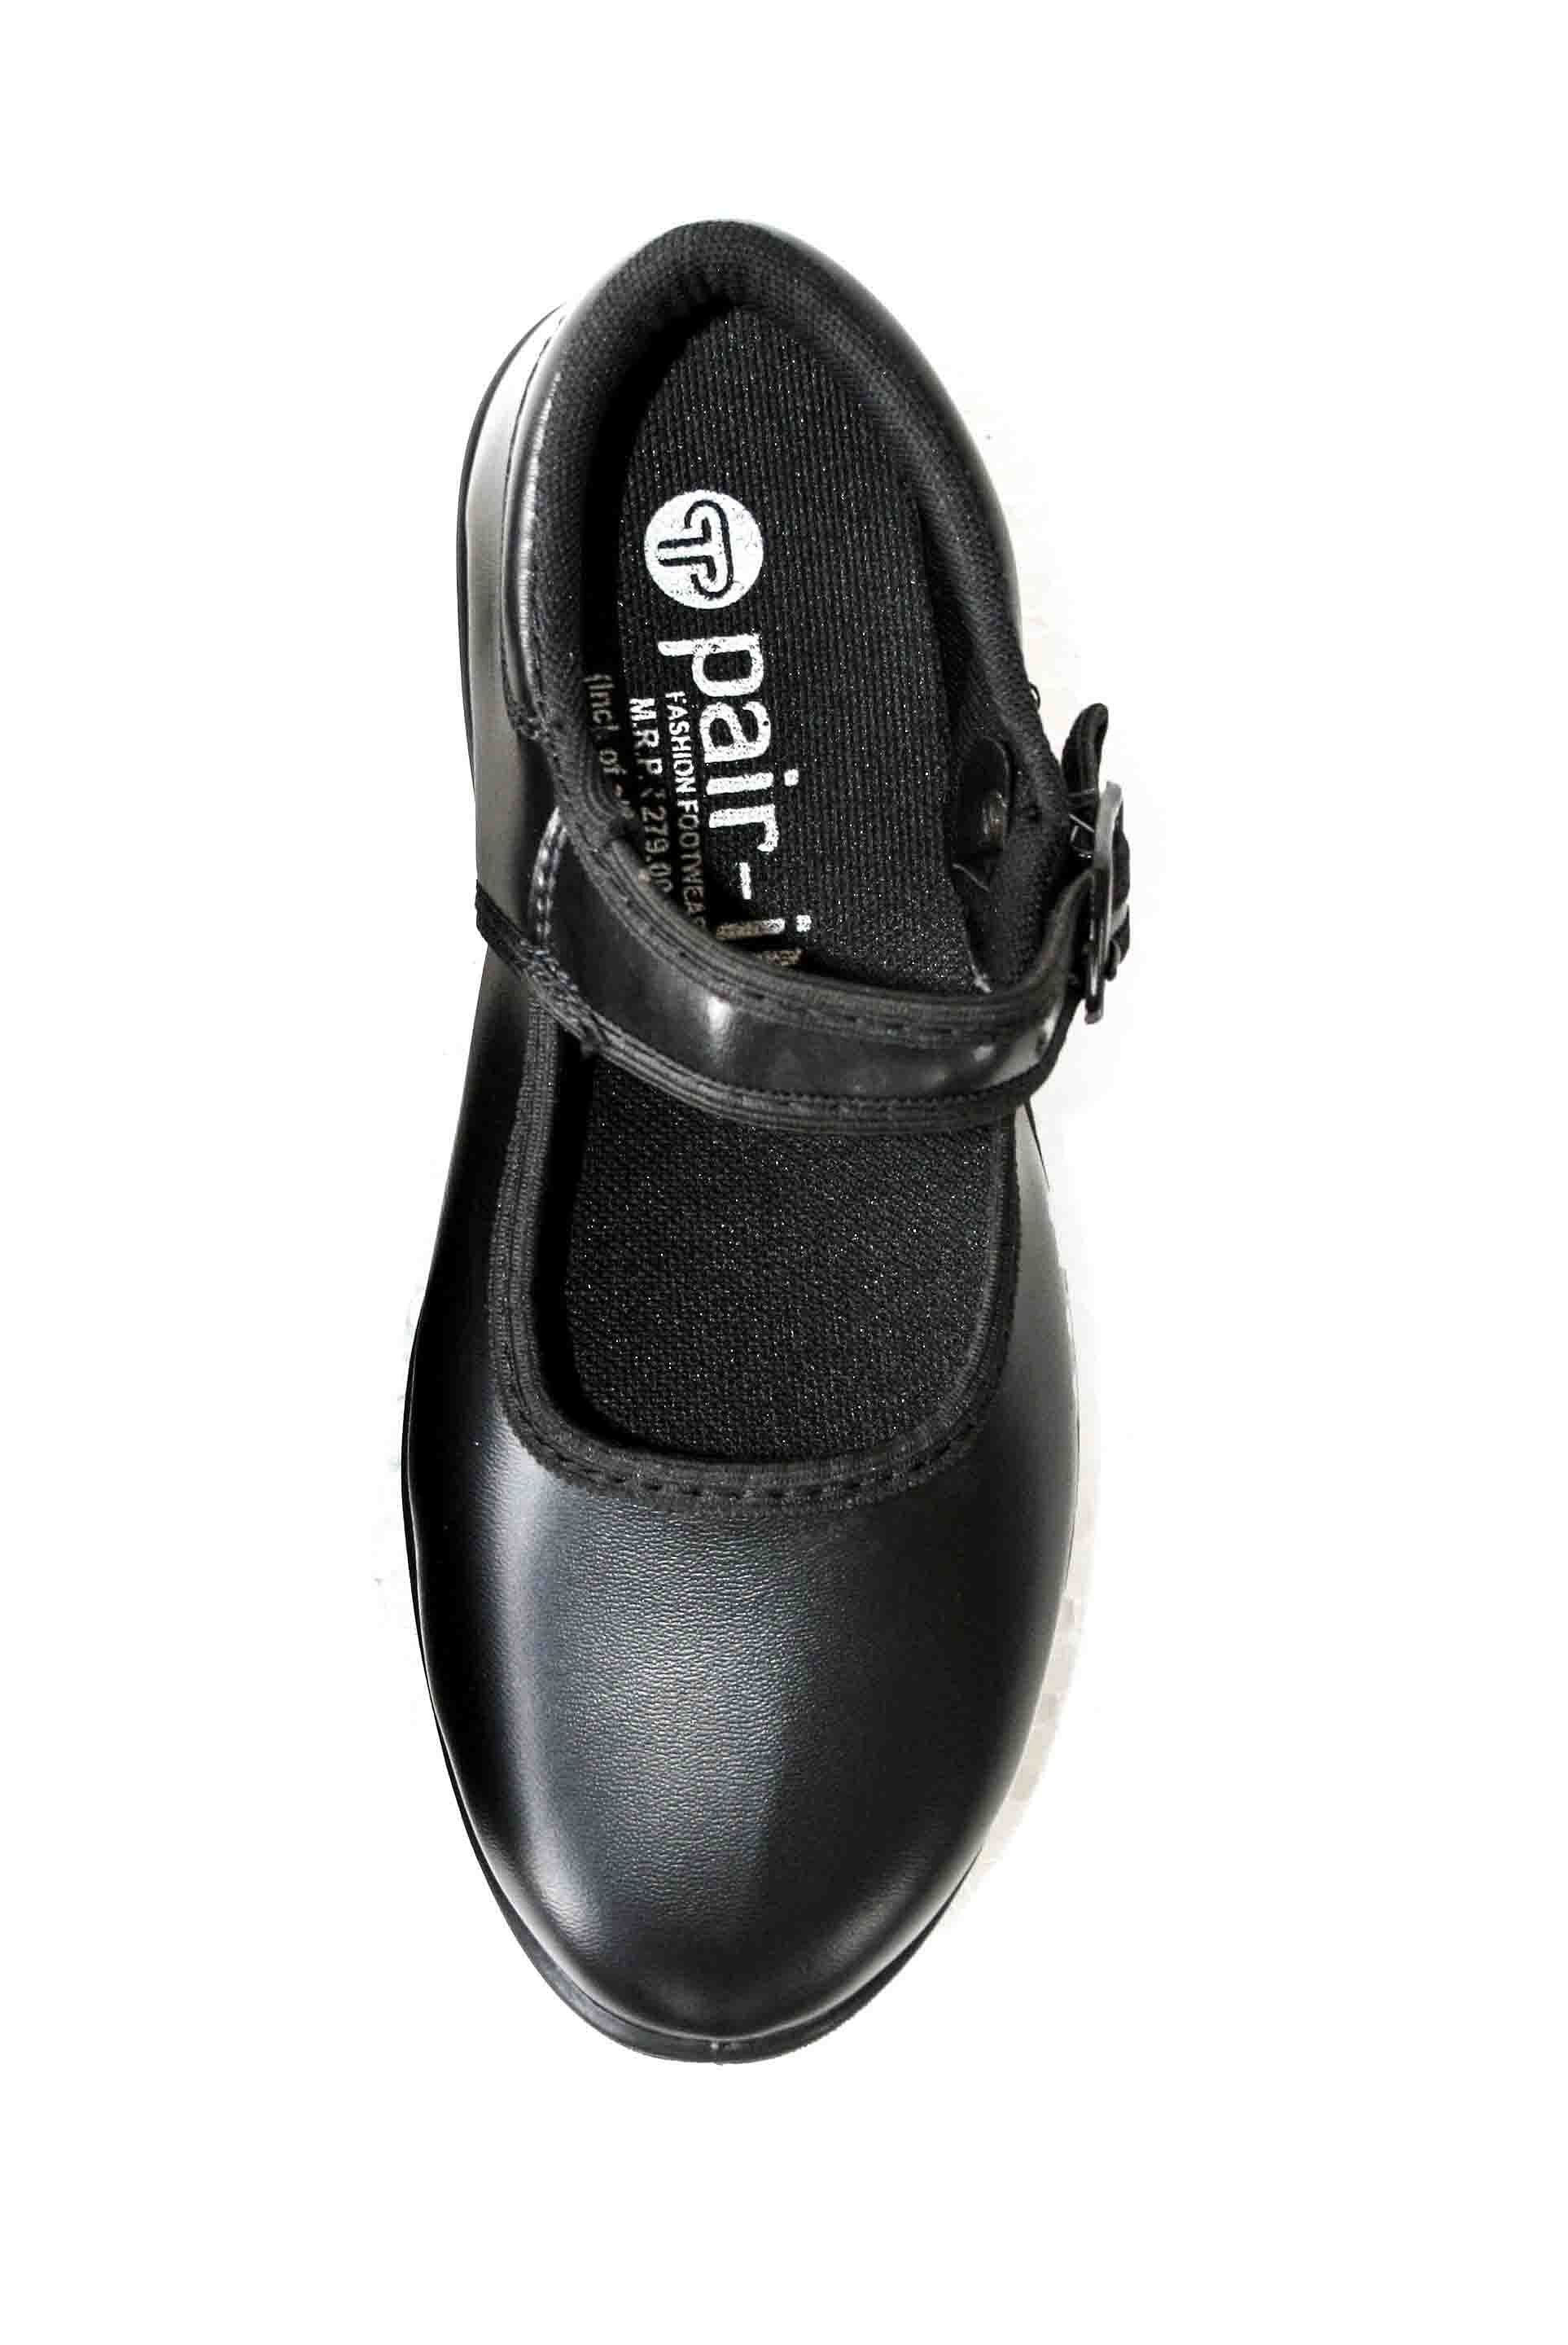 Pair-it Girls PVC School Shoe-Size- 1,2,3 - Color Black